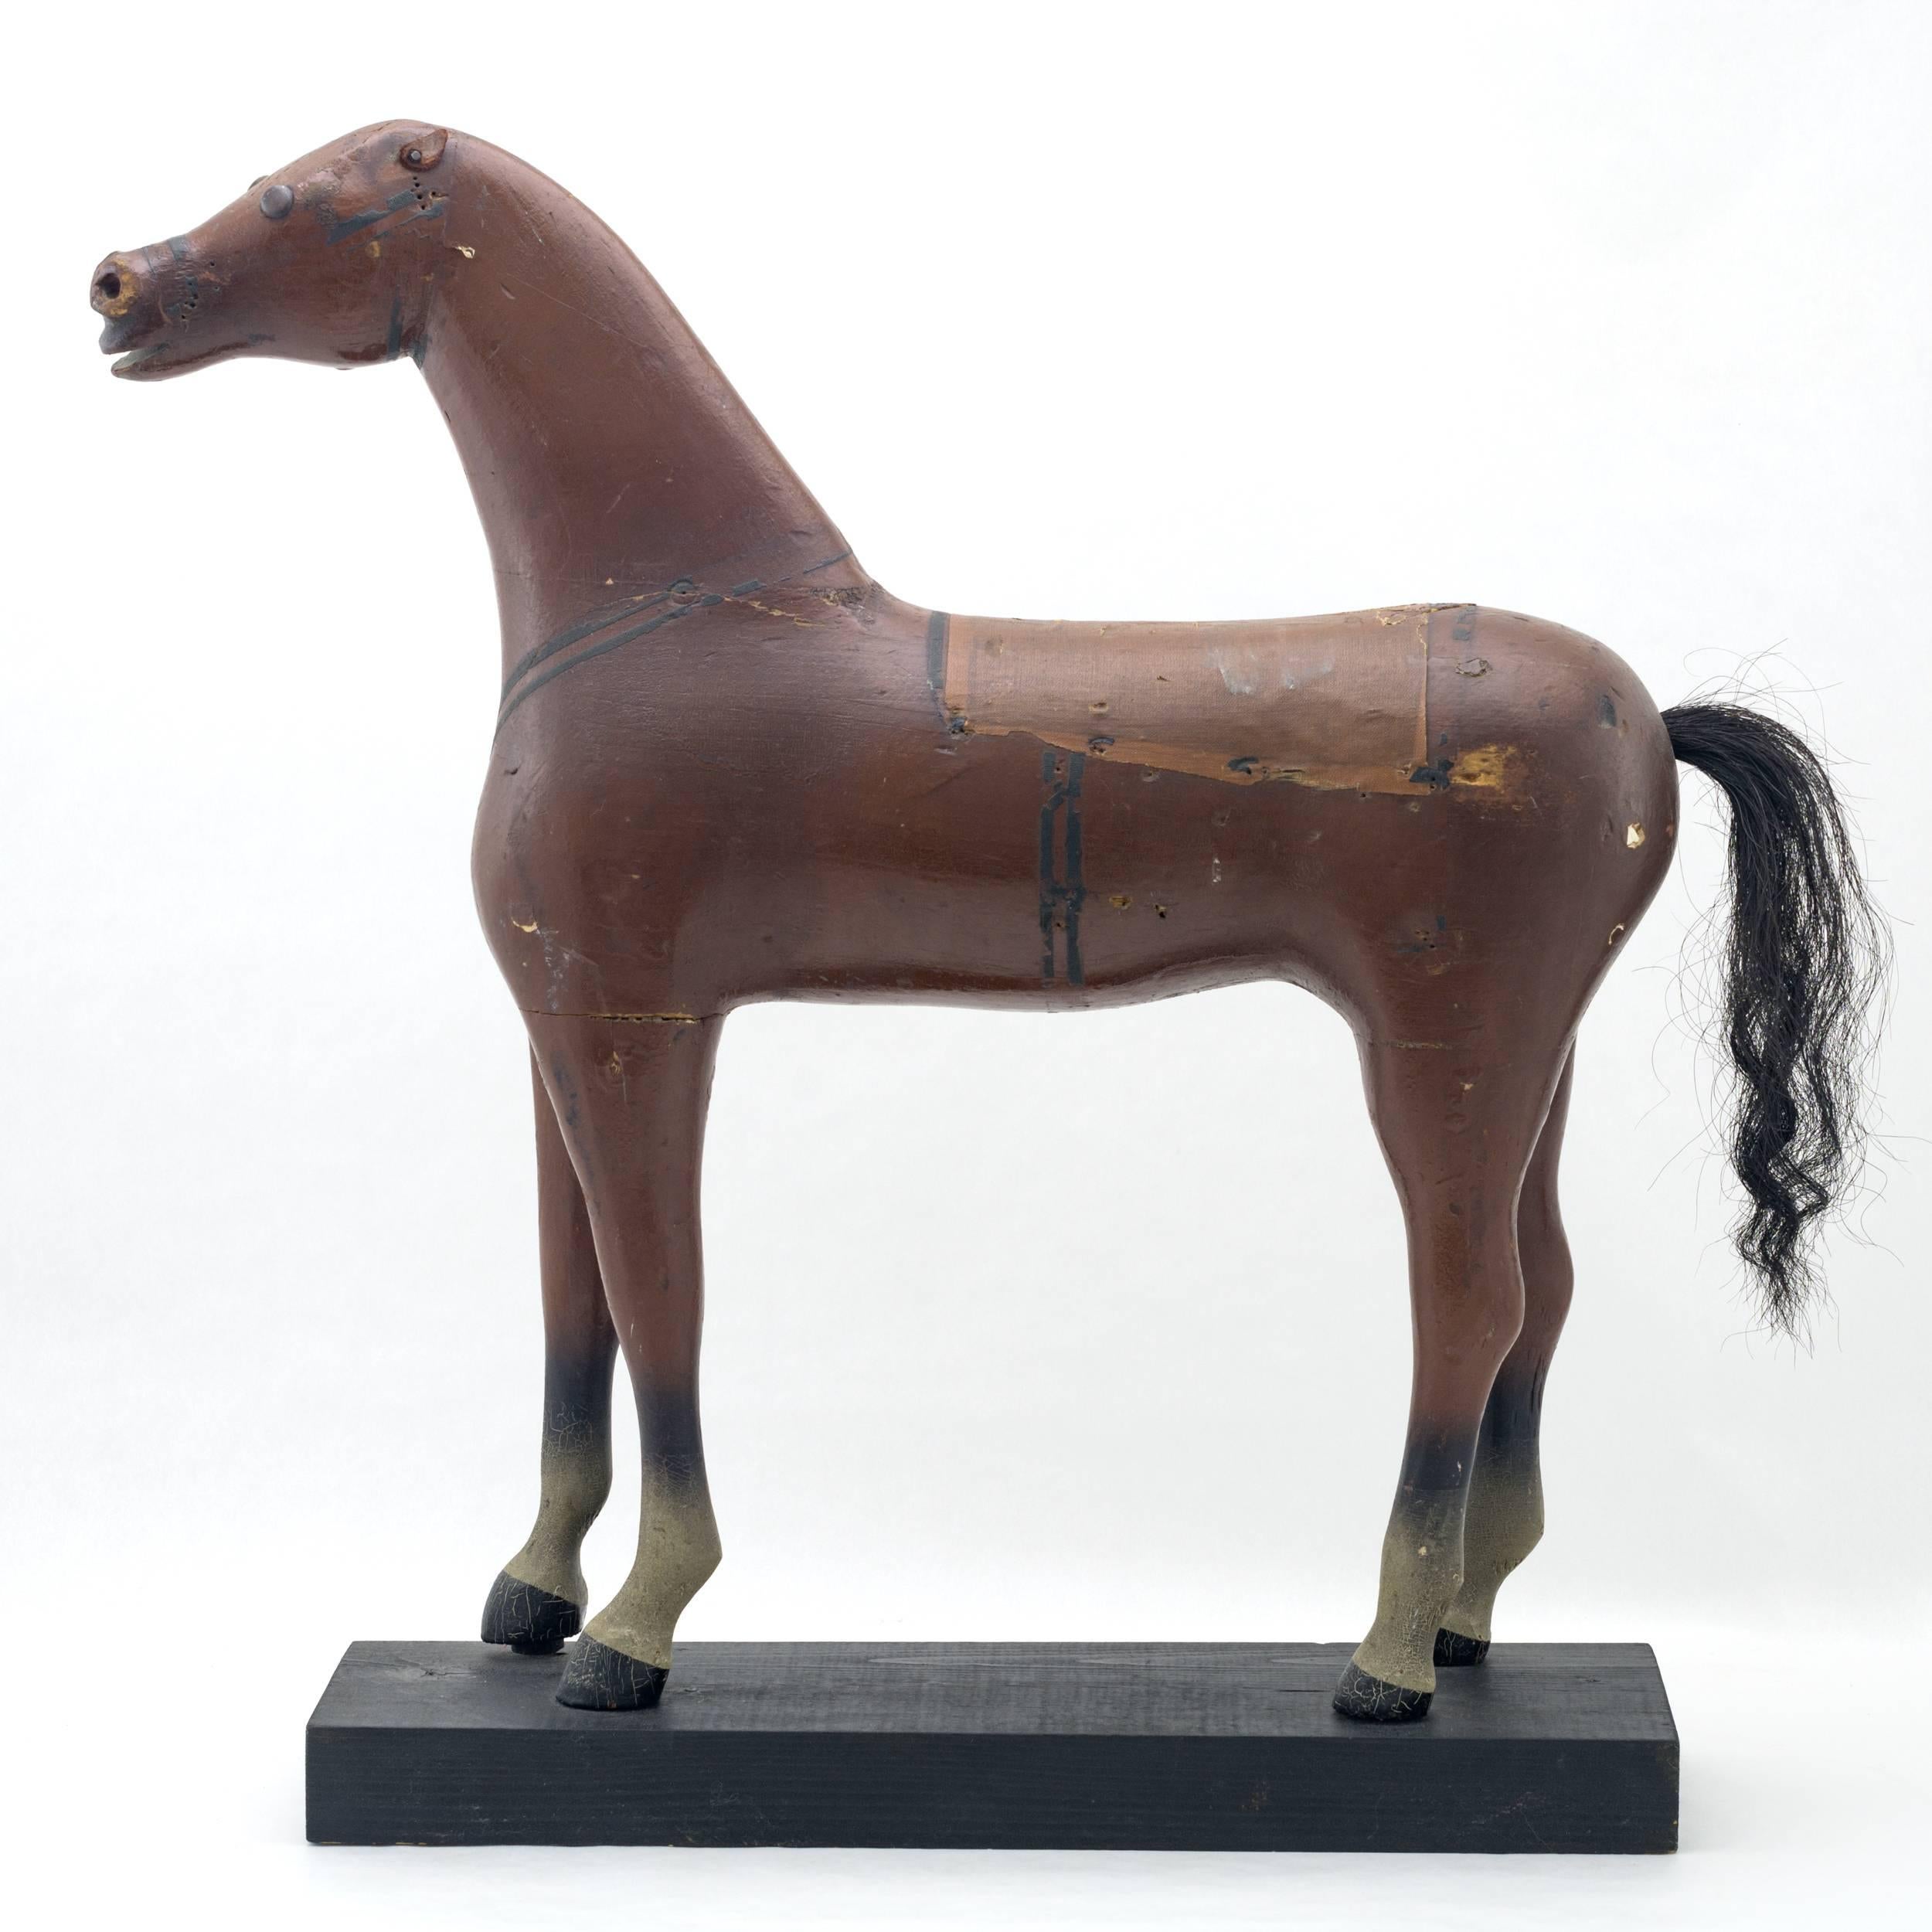 Cheval debout en bois sculpté et peint au gesso.
avec selle en tissu peint et queue en crin de cheval
Monté sur une plate-forme peinte en noir fabriquée ultérieurement.
 
      
      